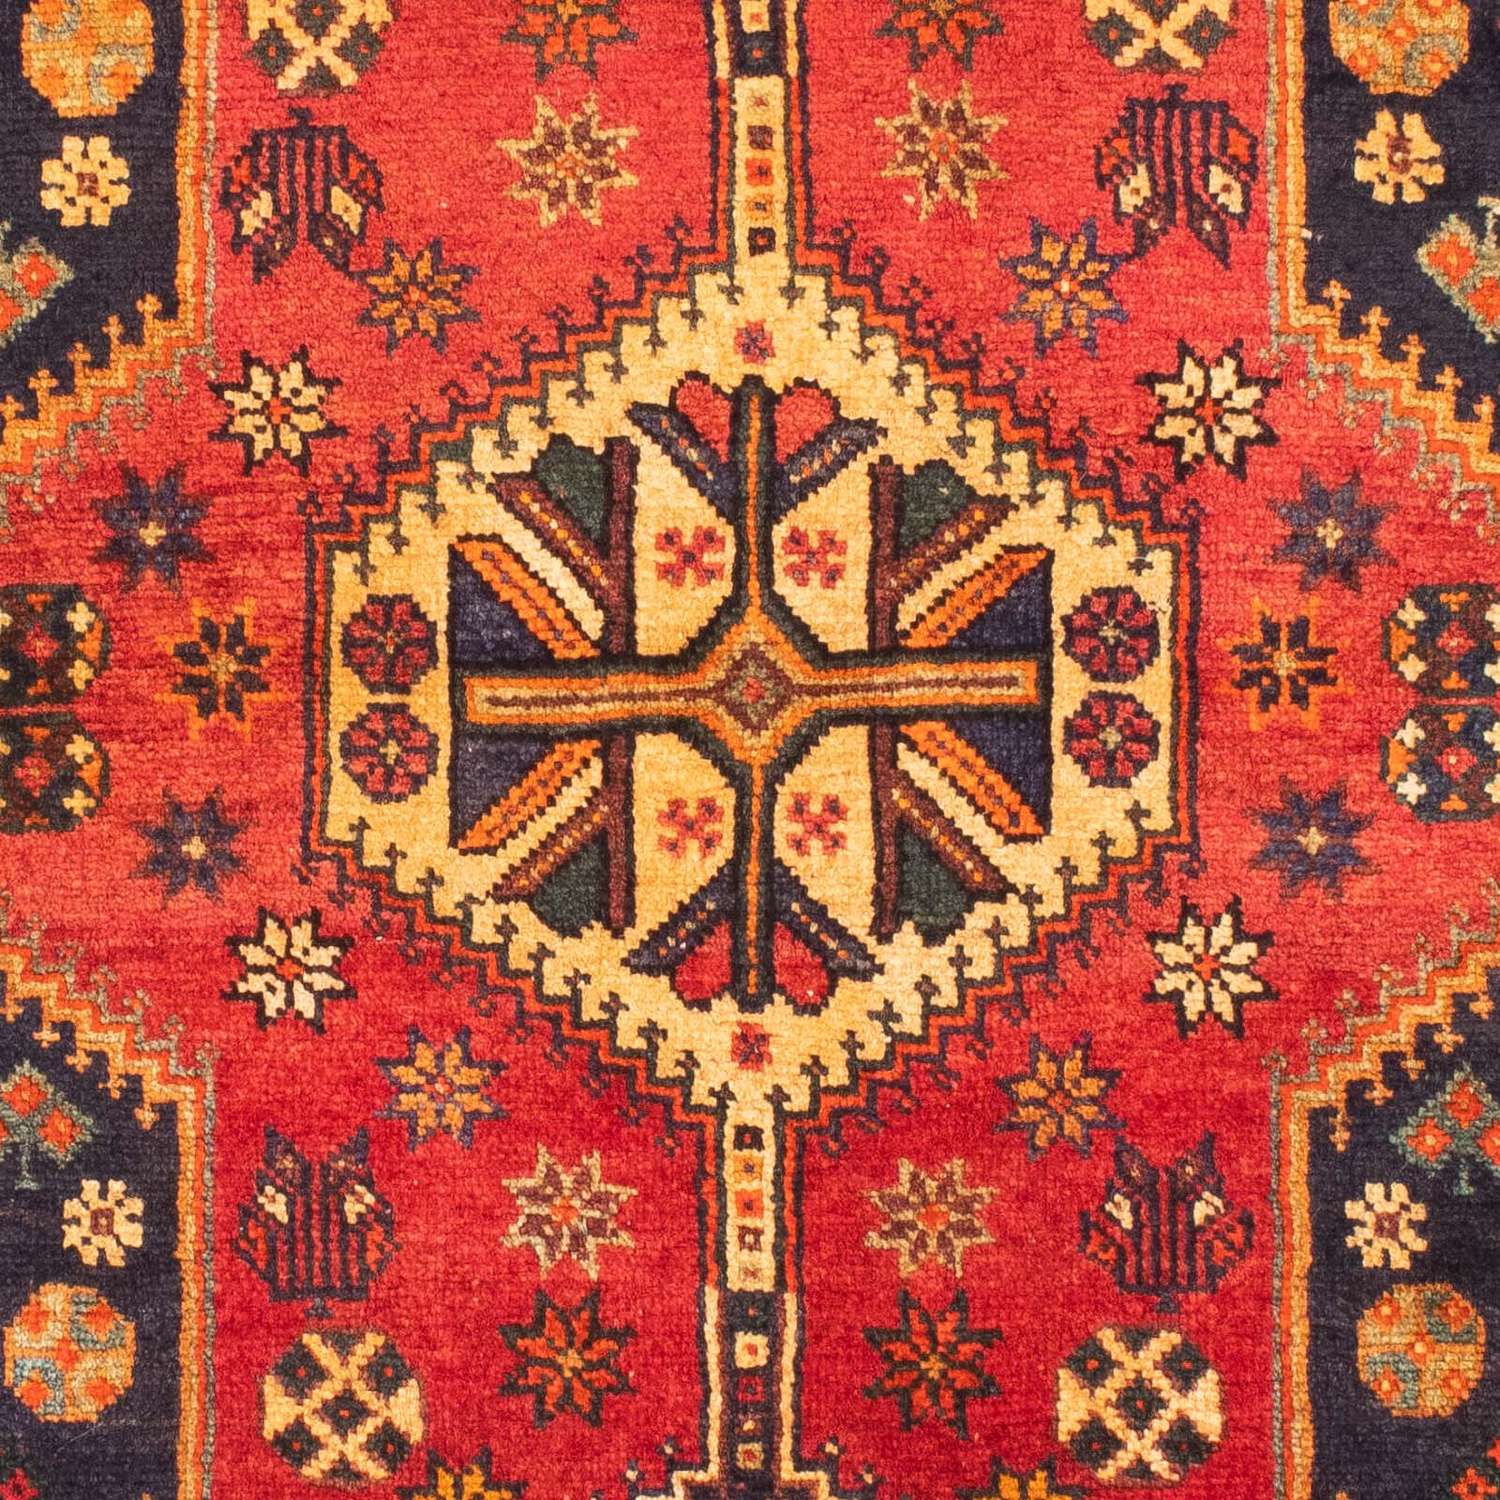 Alfombra persa - Nómada - 170 x 116 cm - rojo oscuro